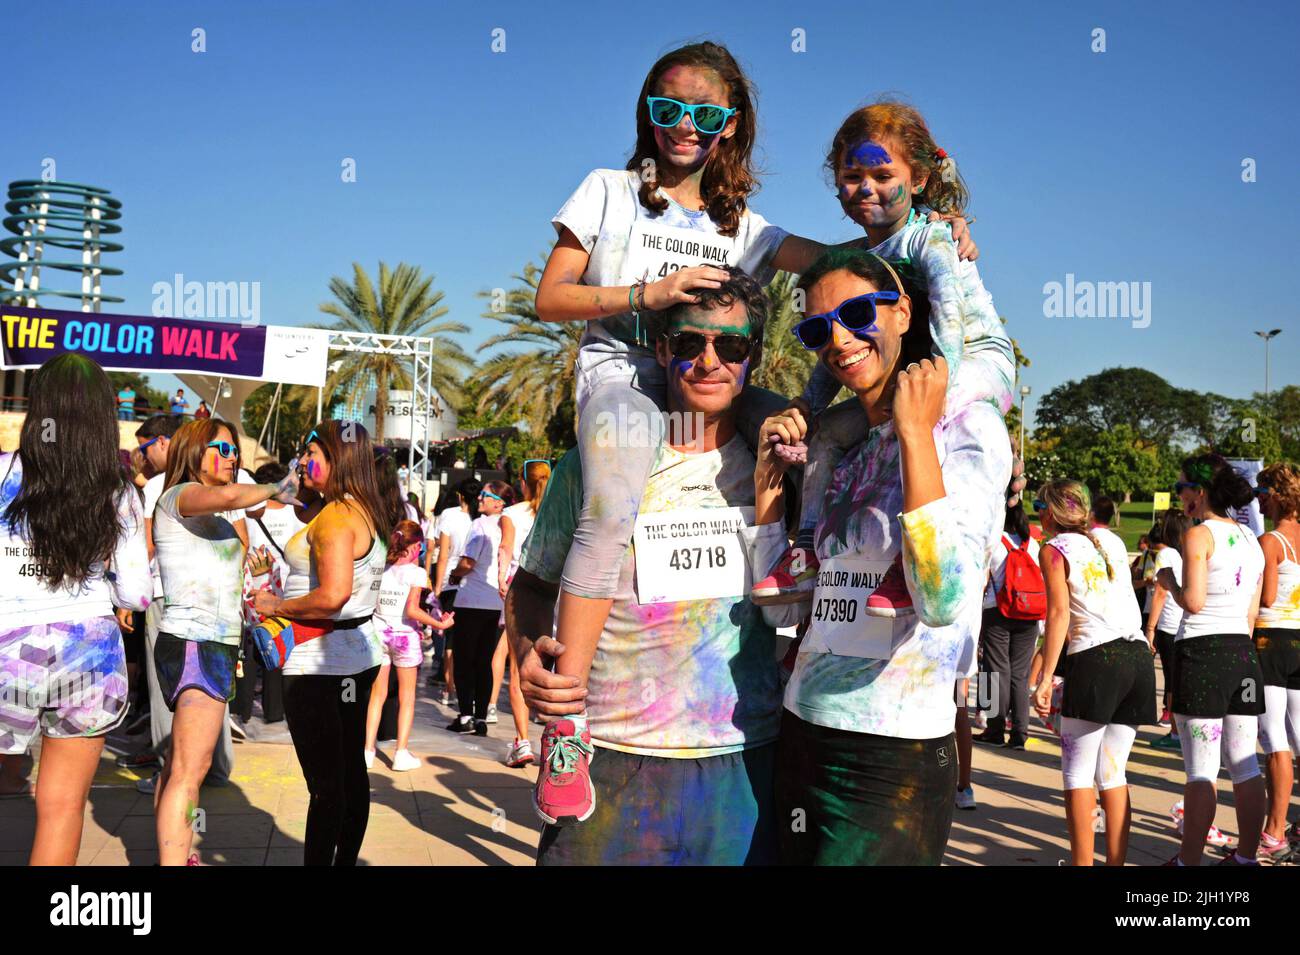 Une famille heureuse et souriante pose pour une photo à la Color Walk à Dubaï, aux Émirats arabes Unis. Les parents ont les deux filles sur le pigegyback. Événement en plein air amusant. Banque D'Images